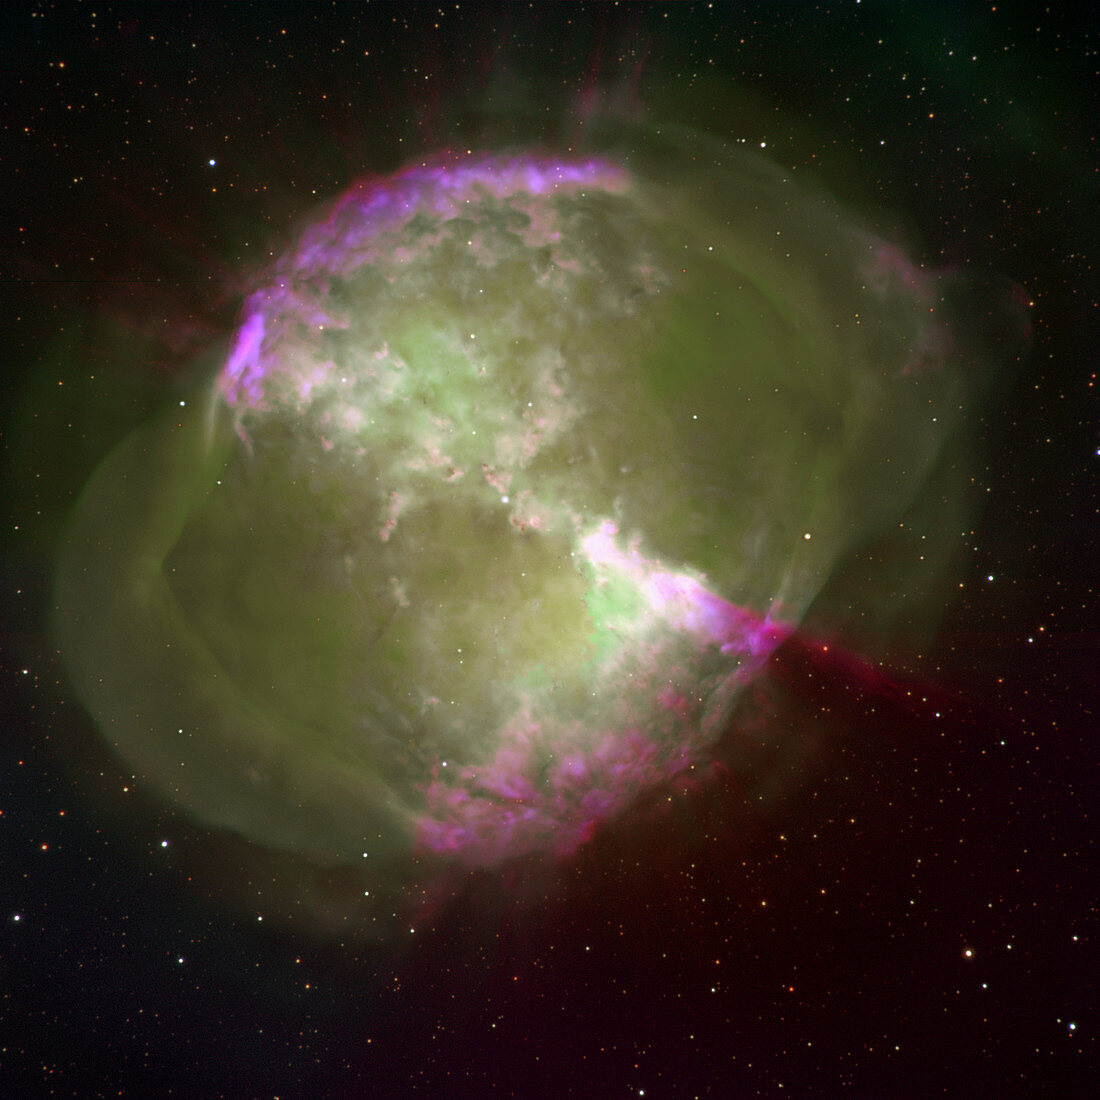 Dumbbell nebula (M27)